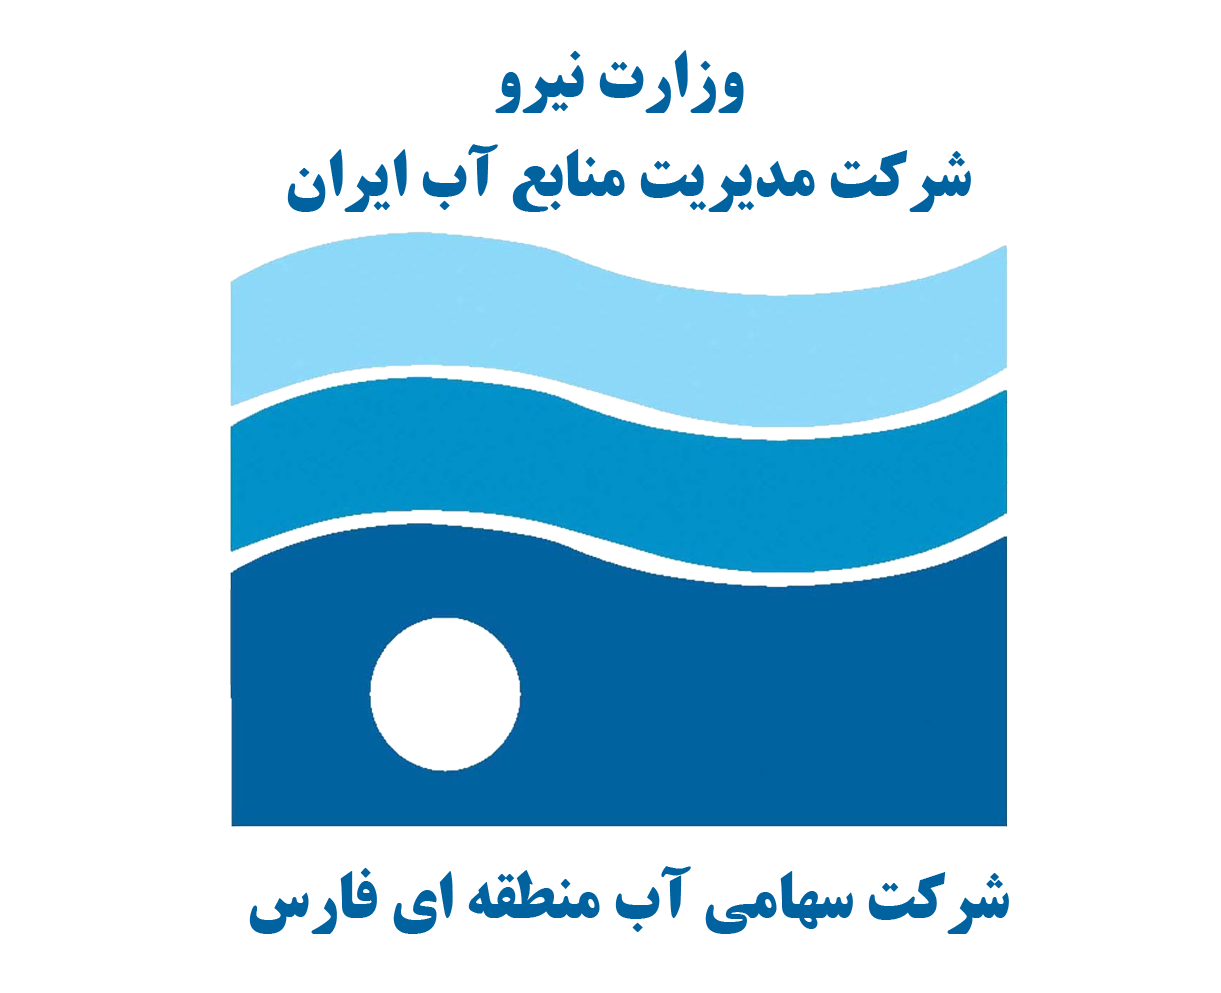 بررسی برهان های مشارکت نکردن آب بران کشاورزی در برنامه های حفاظت و بهره برداری از منابع آب زیرزمینی و ارایه ی راهکارهای مناسب در استان فارس